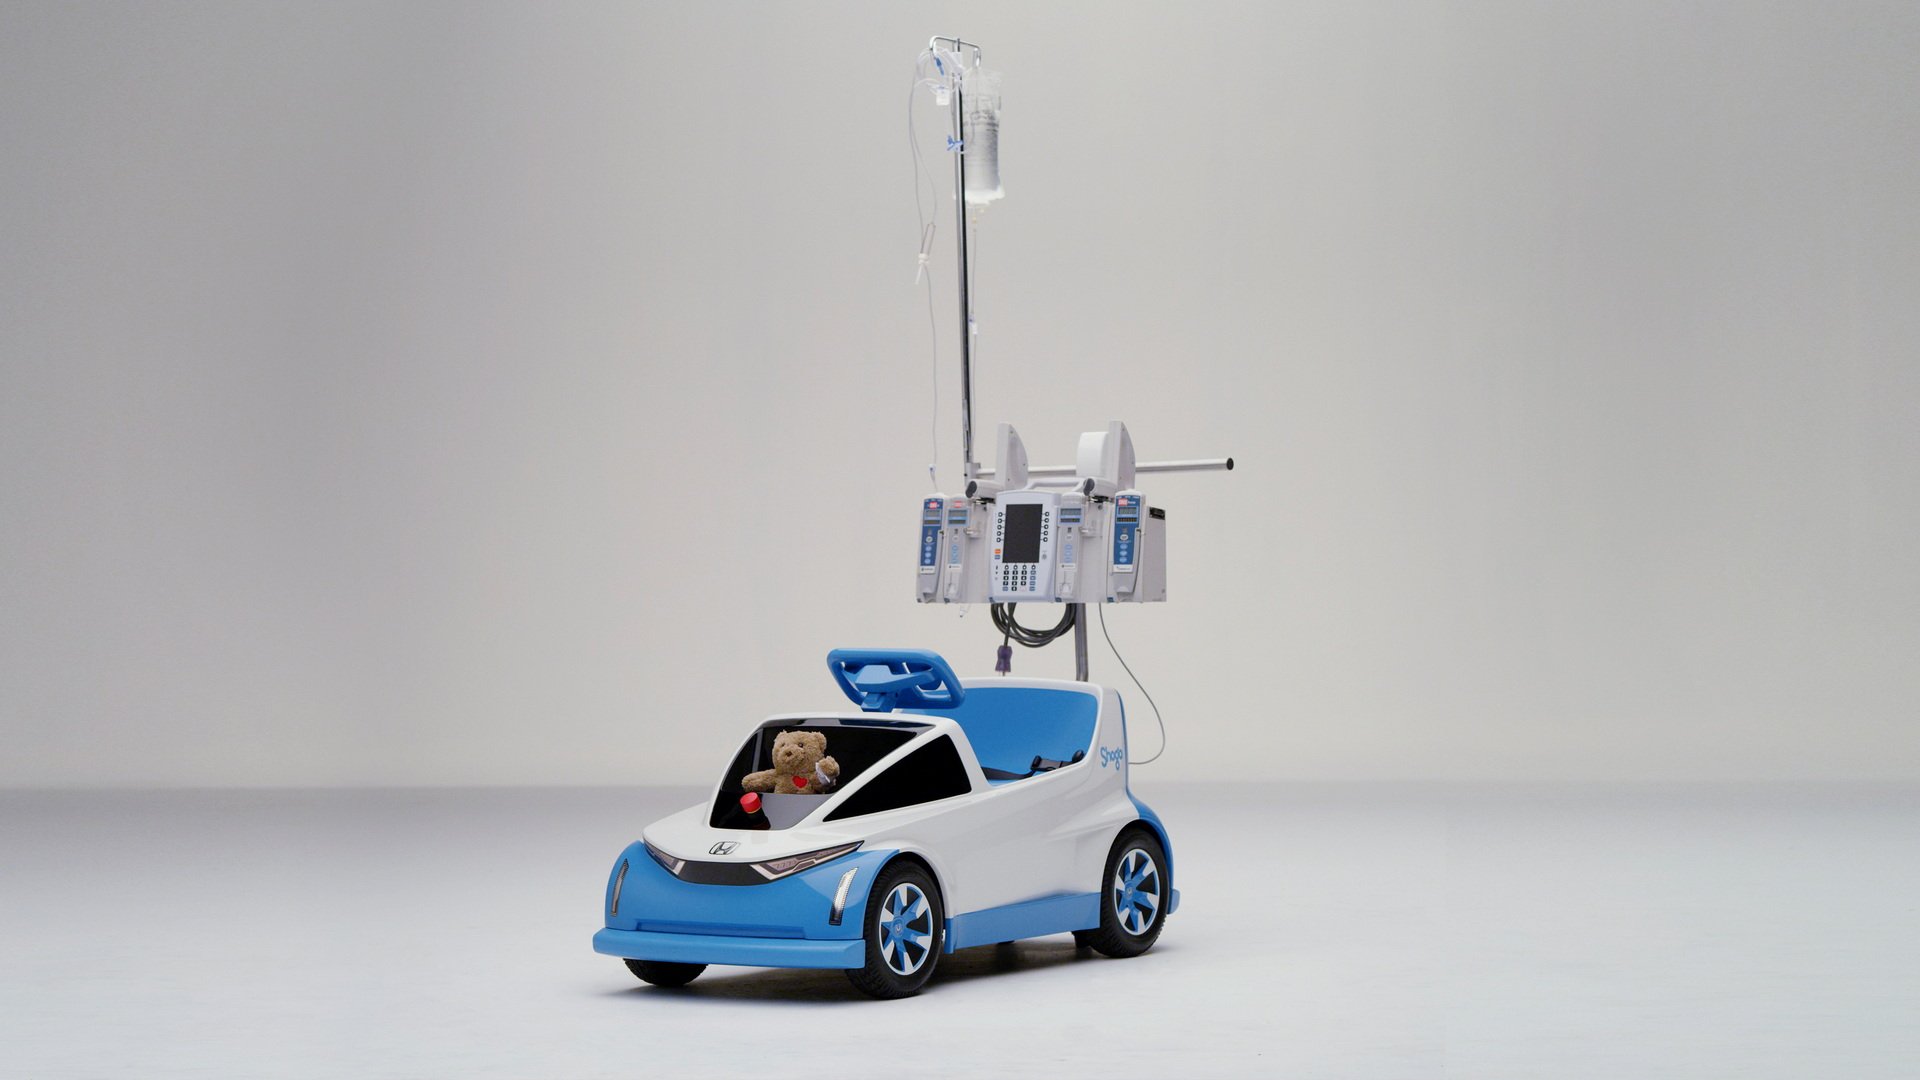 معرفی جدیدترین محصول هوندا؛ یک خودروی برقی مخصوص بیمارستان کودکان